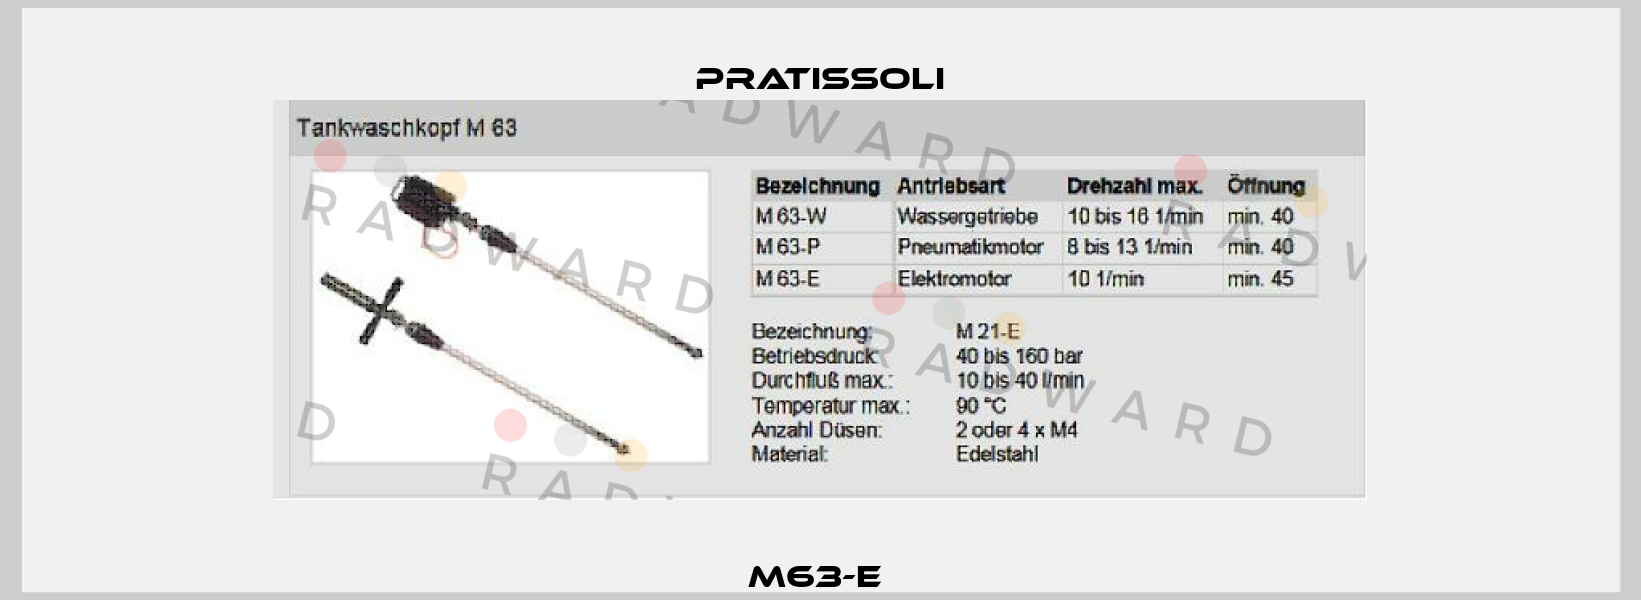 M63-E  Pratissoli